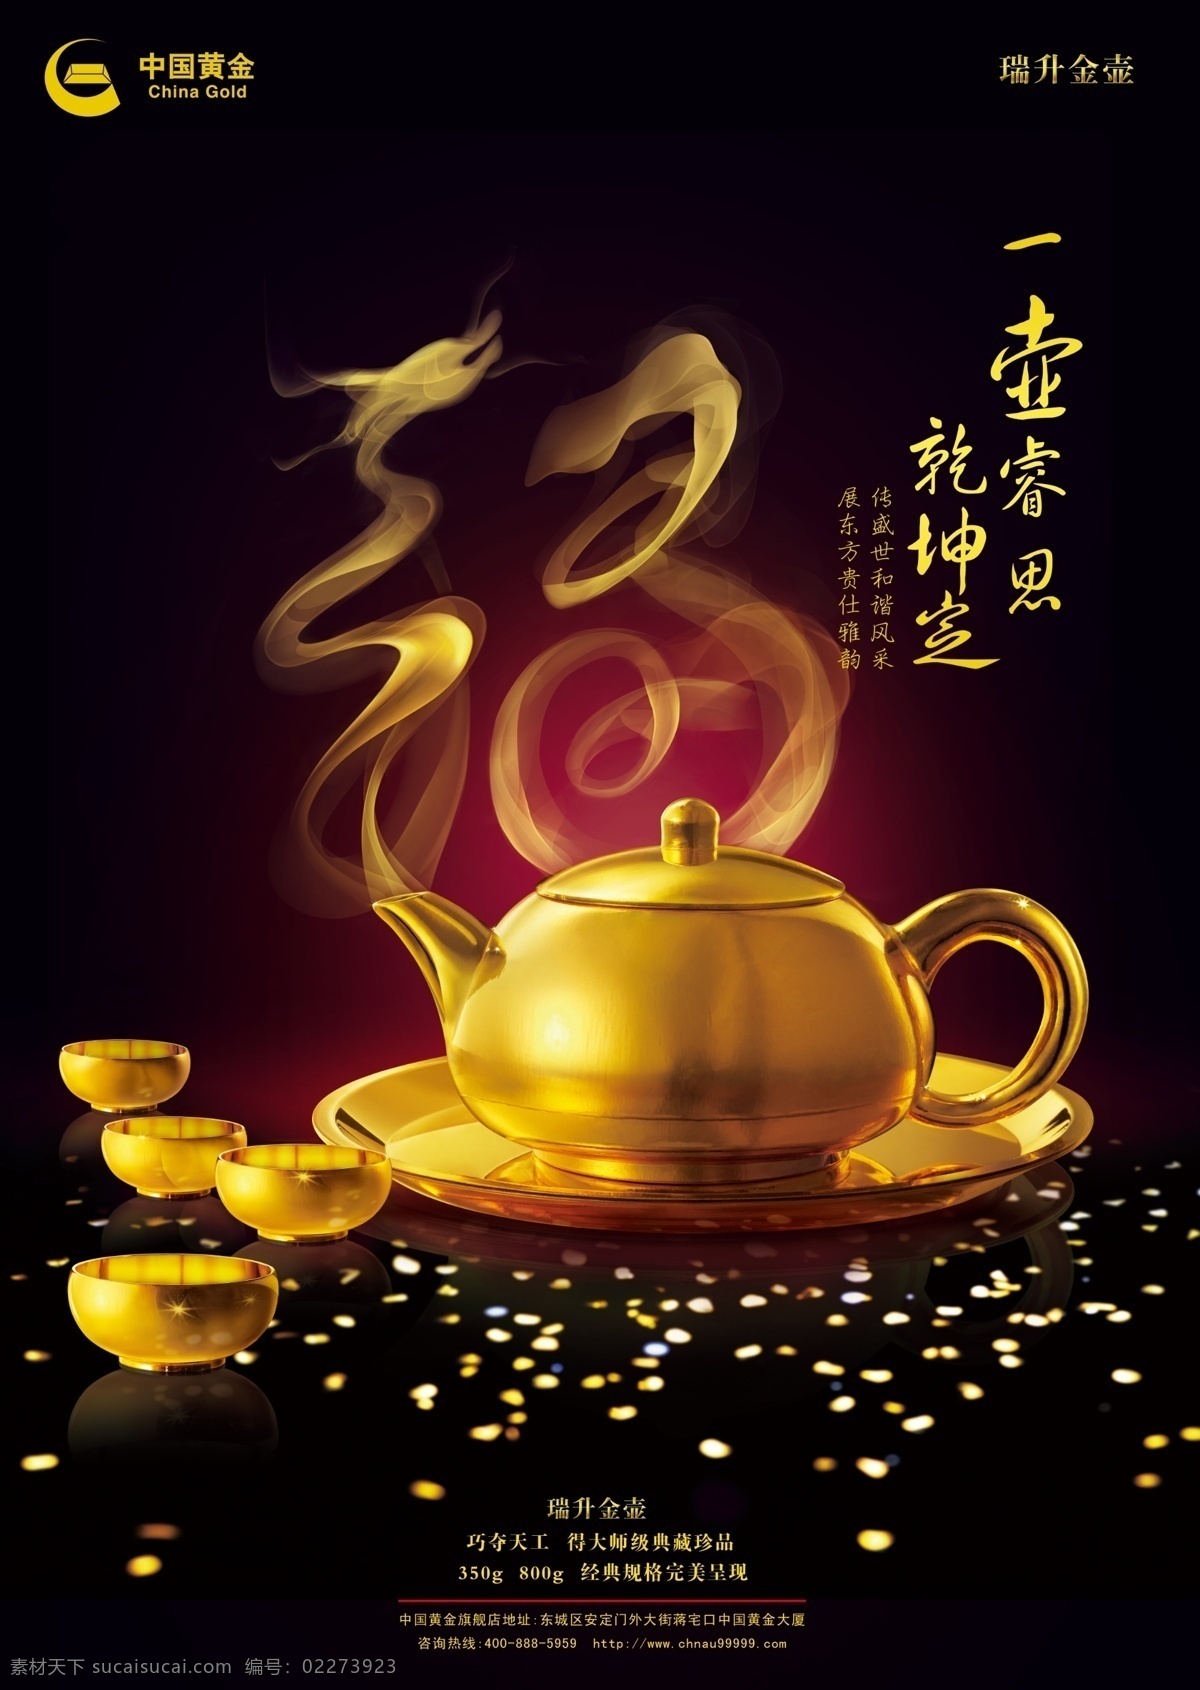 中国黄金 黄金 金子 黄金海报 中国黄金海报 中国黄金标志 中国 logo 金壶 广告设计模板 源文件